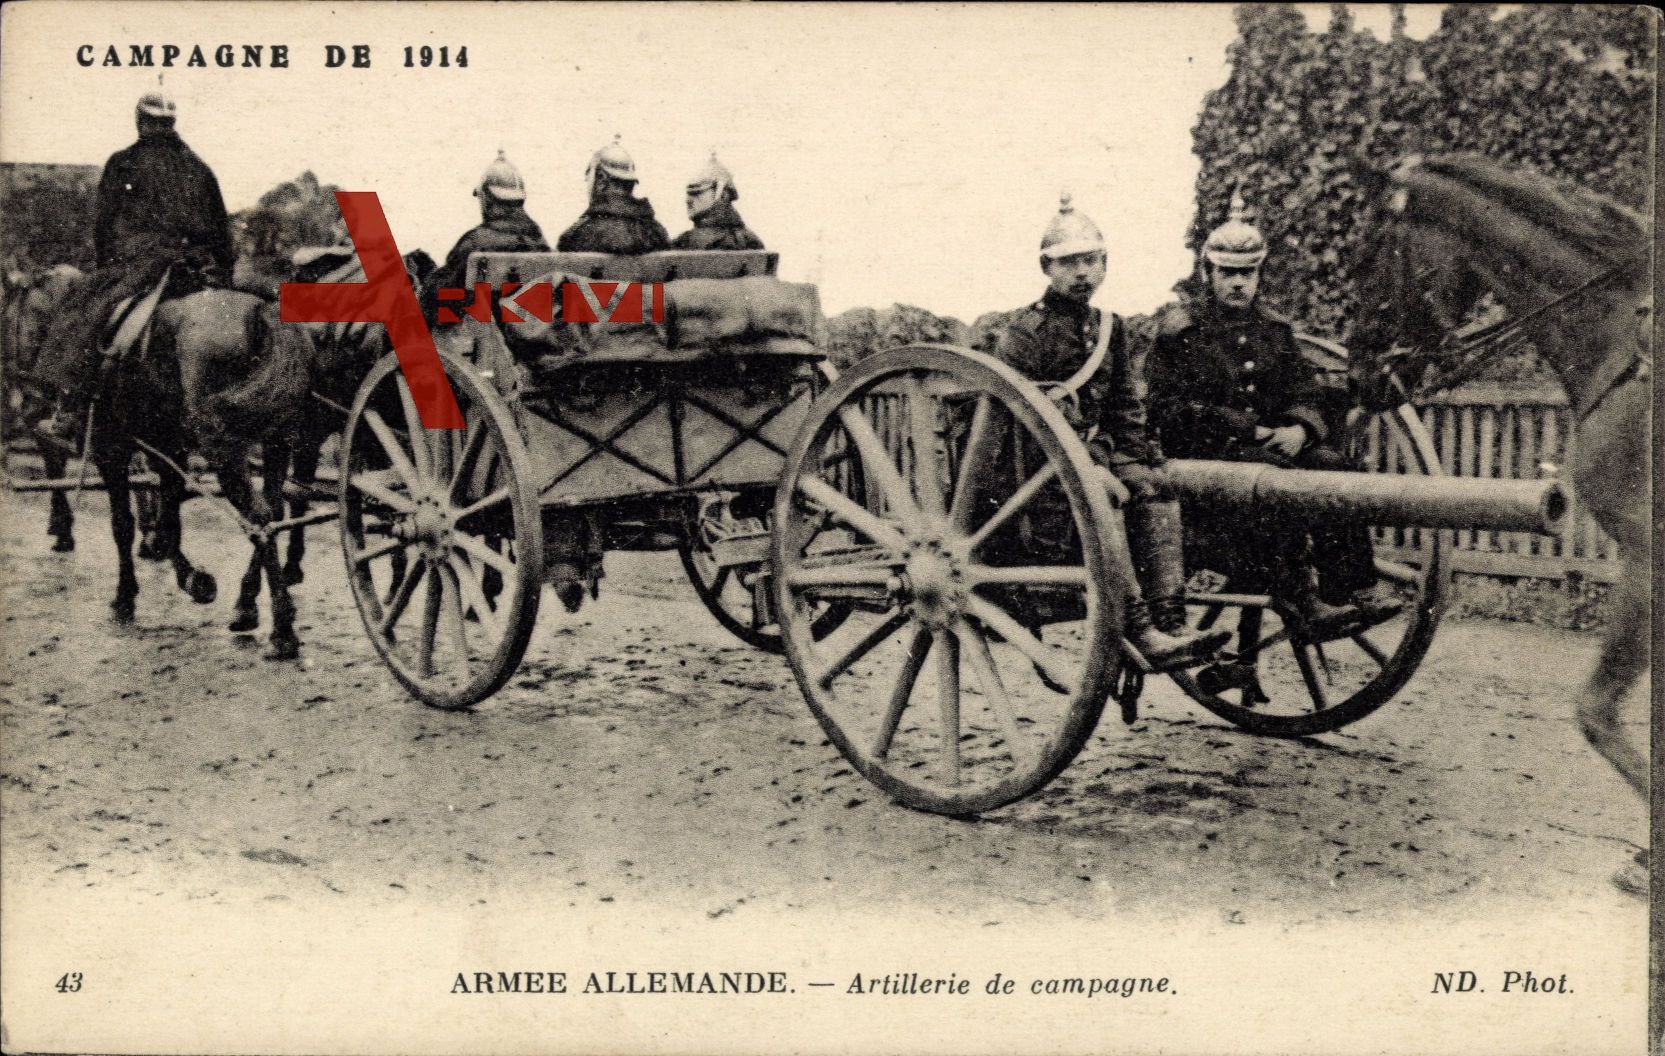 Armée allemande, Artillerie de campagne, Deutsches Geschütz, Krieg 1914